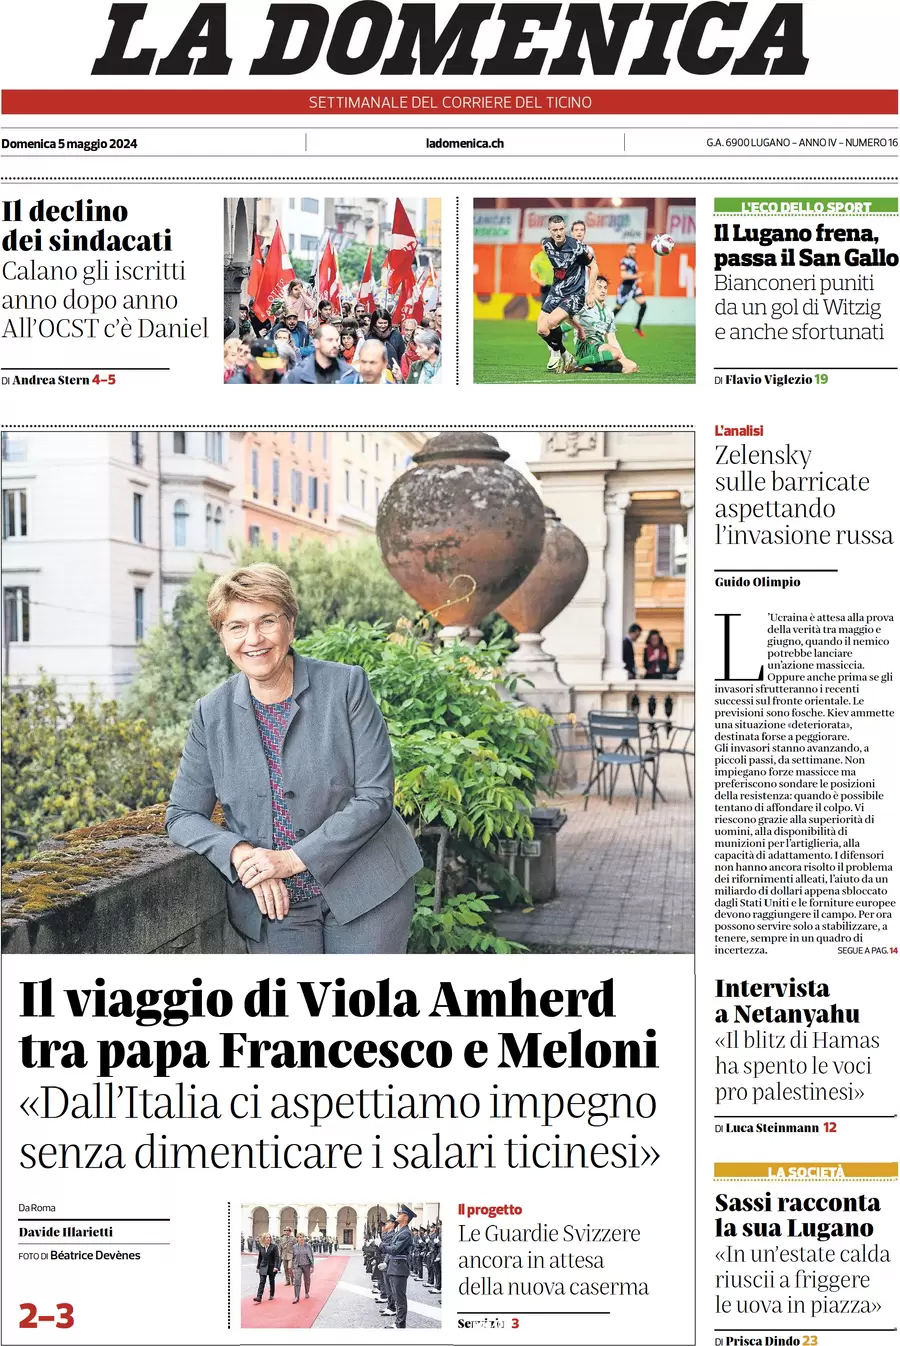 Anteprima prima pagina della rasegna stampa di ieri 2024-05-05 - corriere-del-ticino/